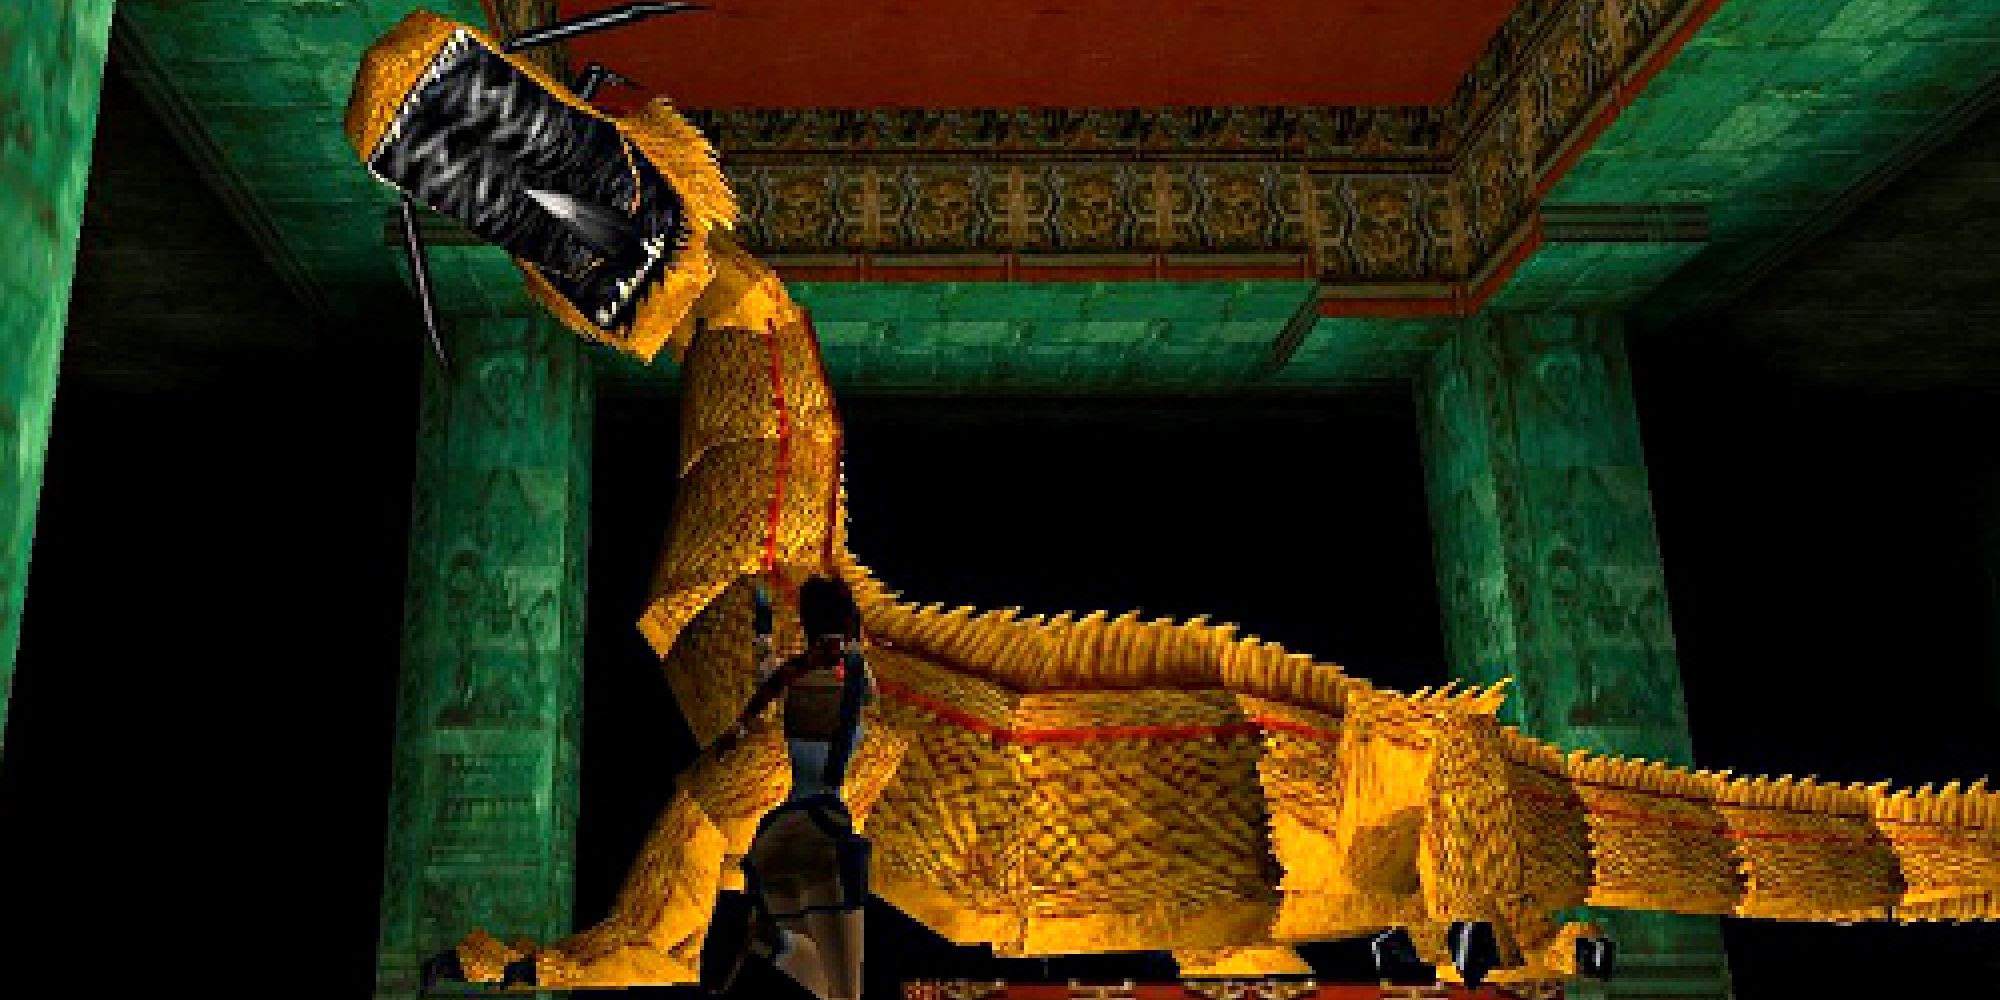 Lara fighting Bartoli in his dragon form in Tomb Raider 2